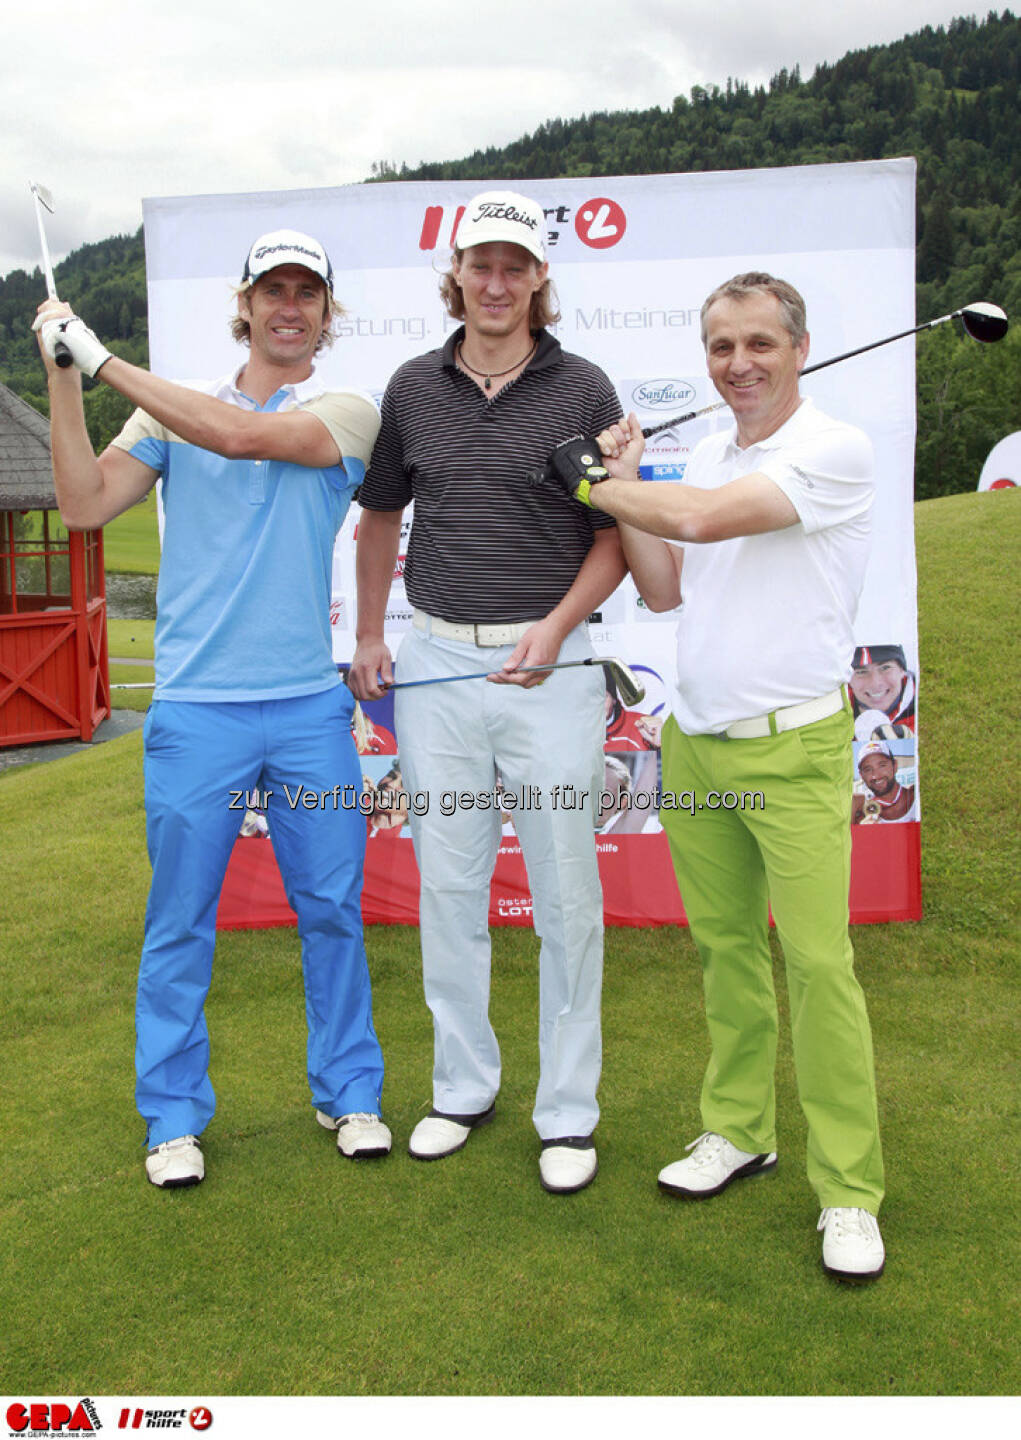 Sporthilfe Golf Trophy, GCC Schladming. Gernot Schwab, Philip Chlupacek und Meinhard Aicher, Foto: GEPA pictures/ Harald Steiner